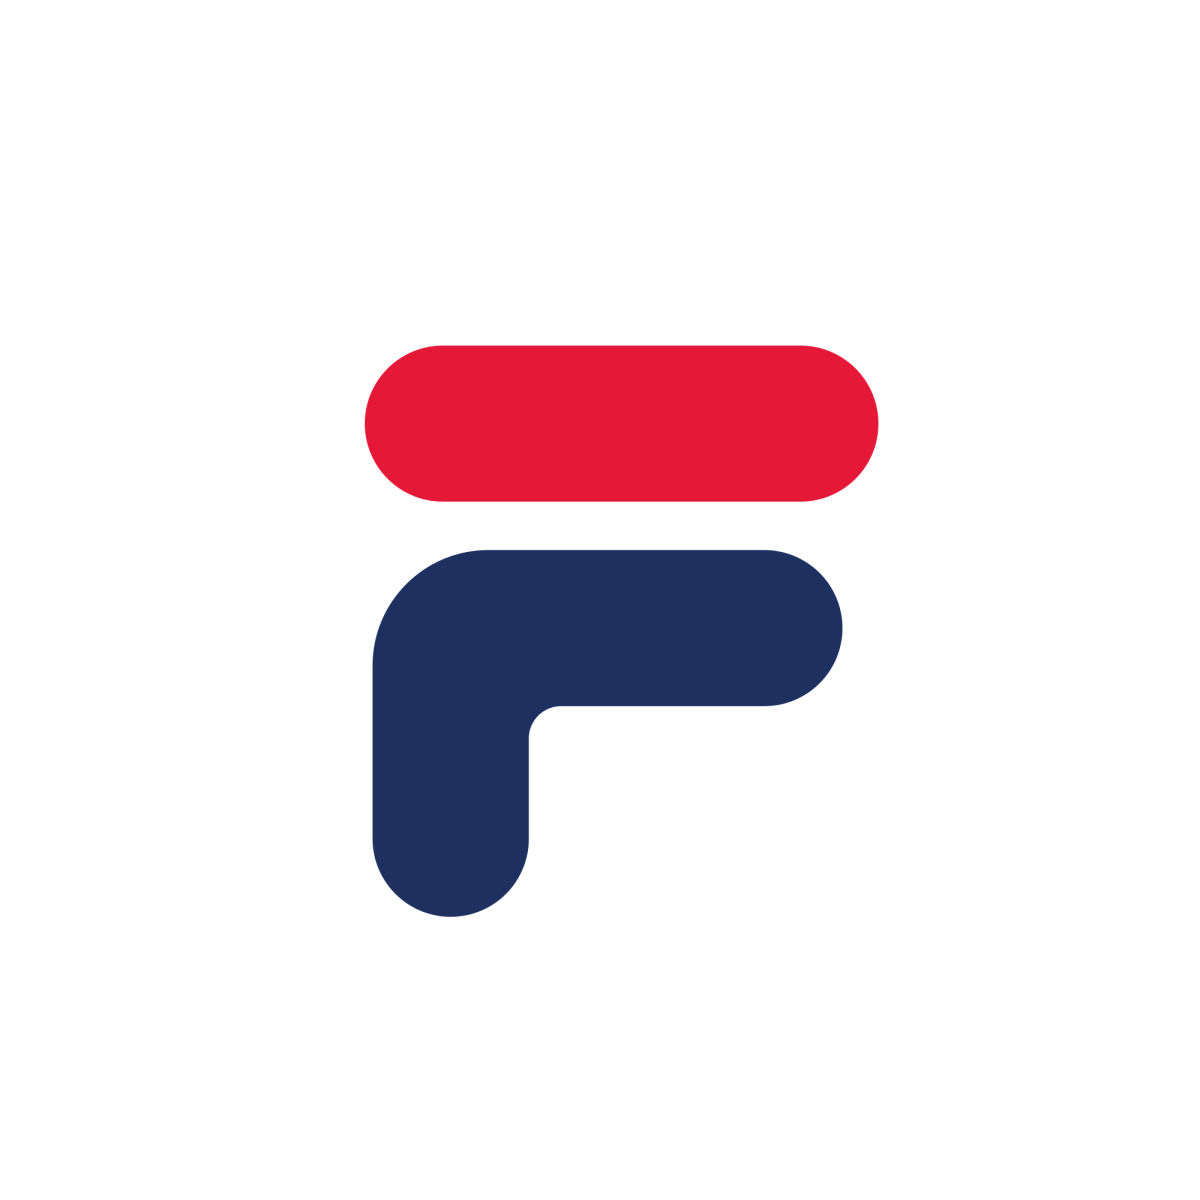 Fila logo Korea. Typographic logo design, Single letter logo, Letter f